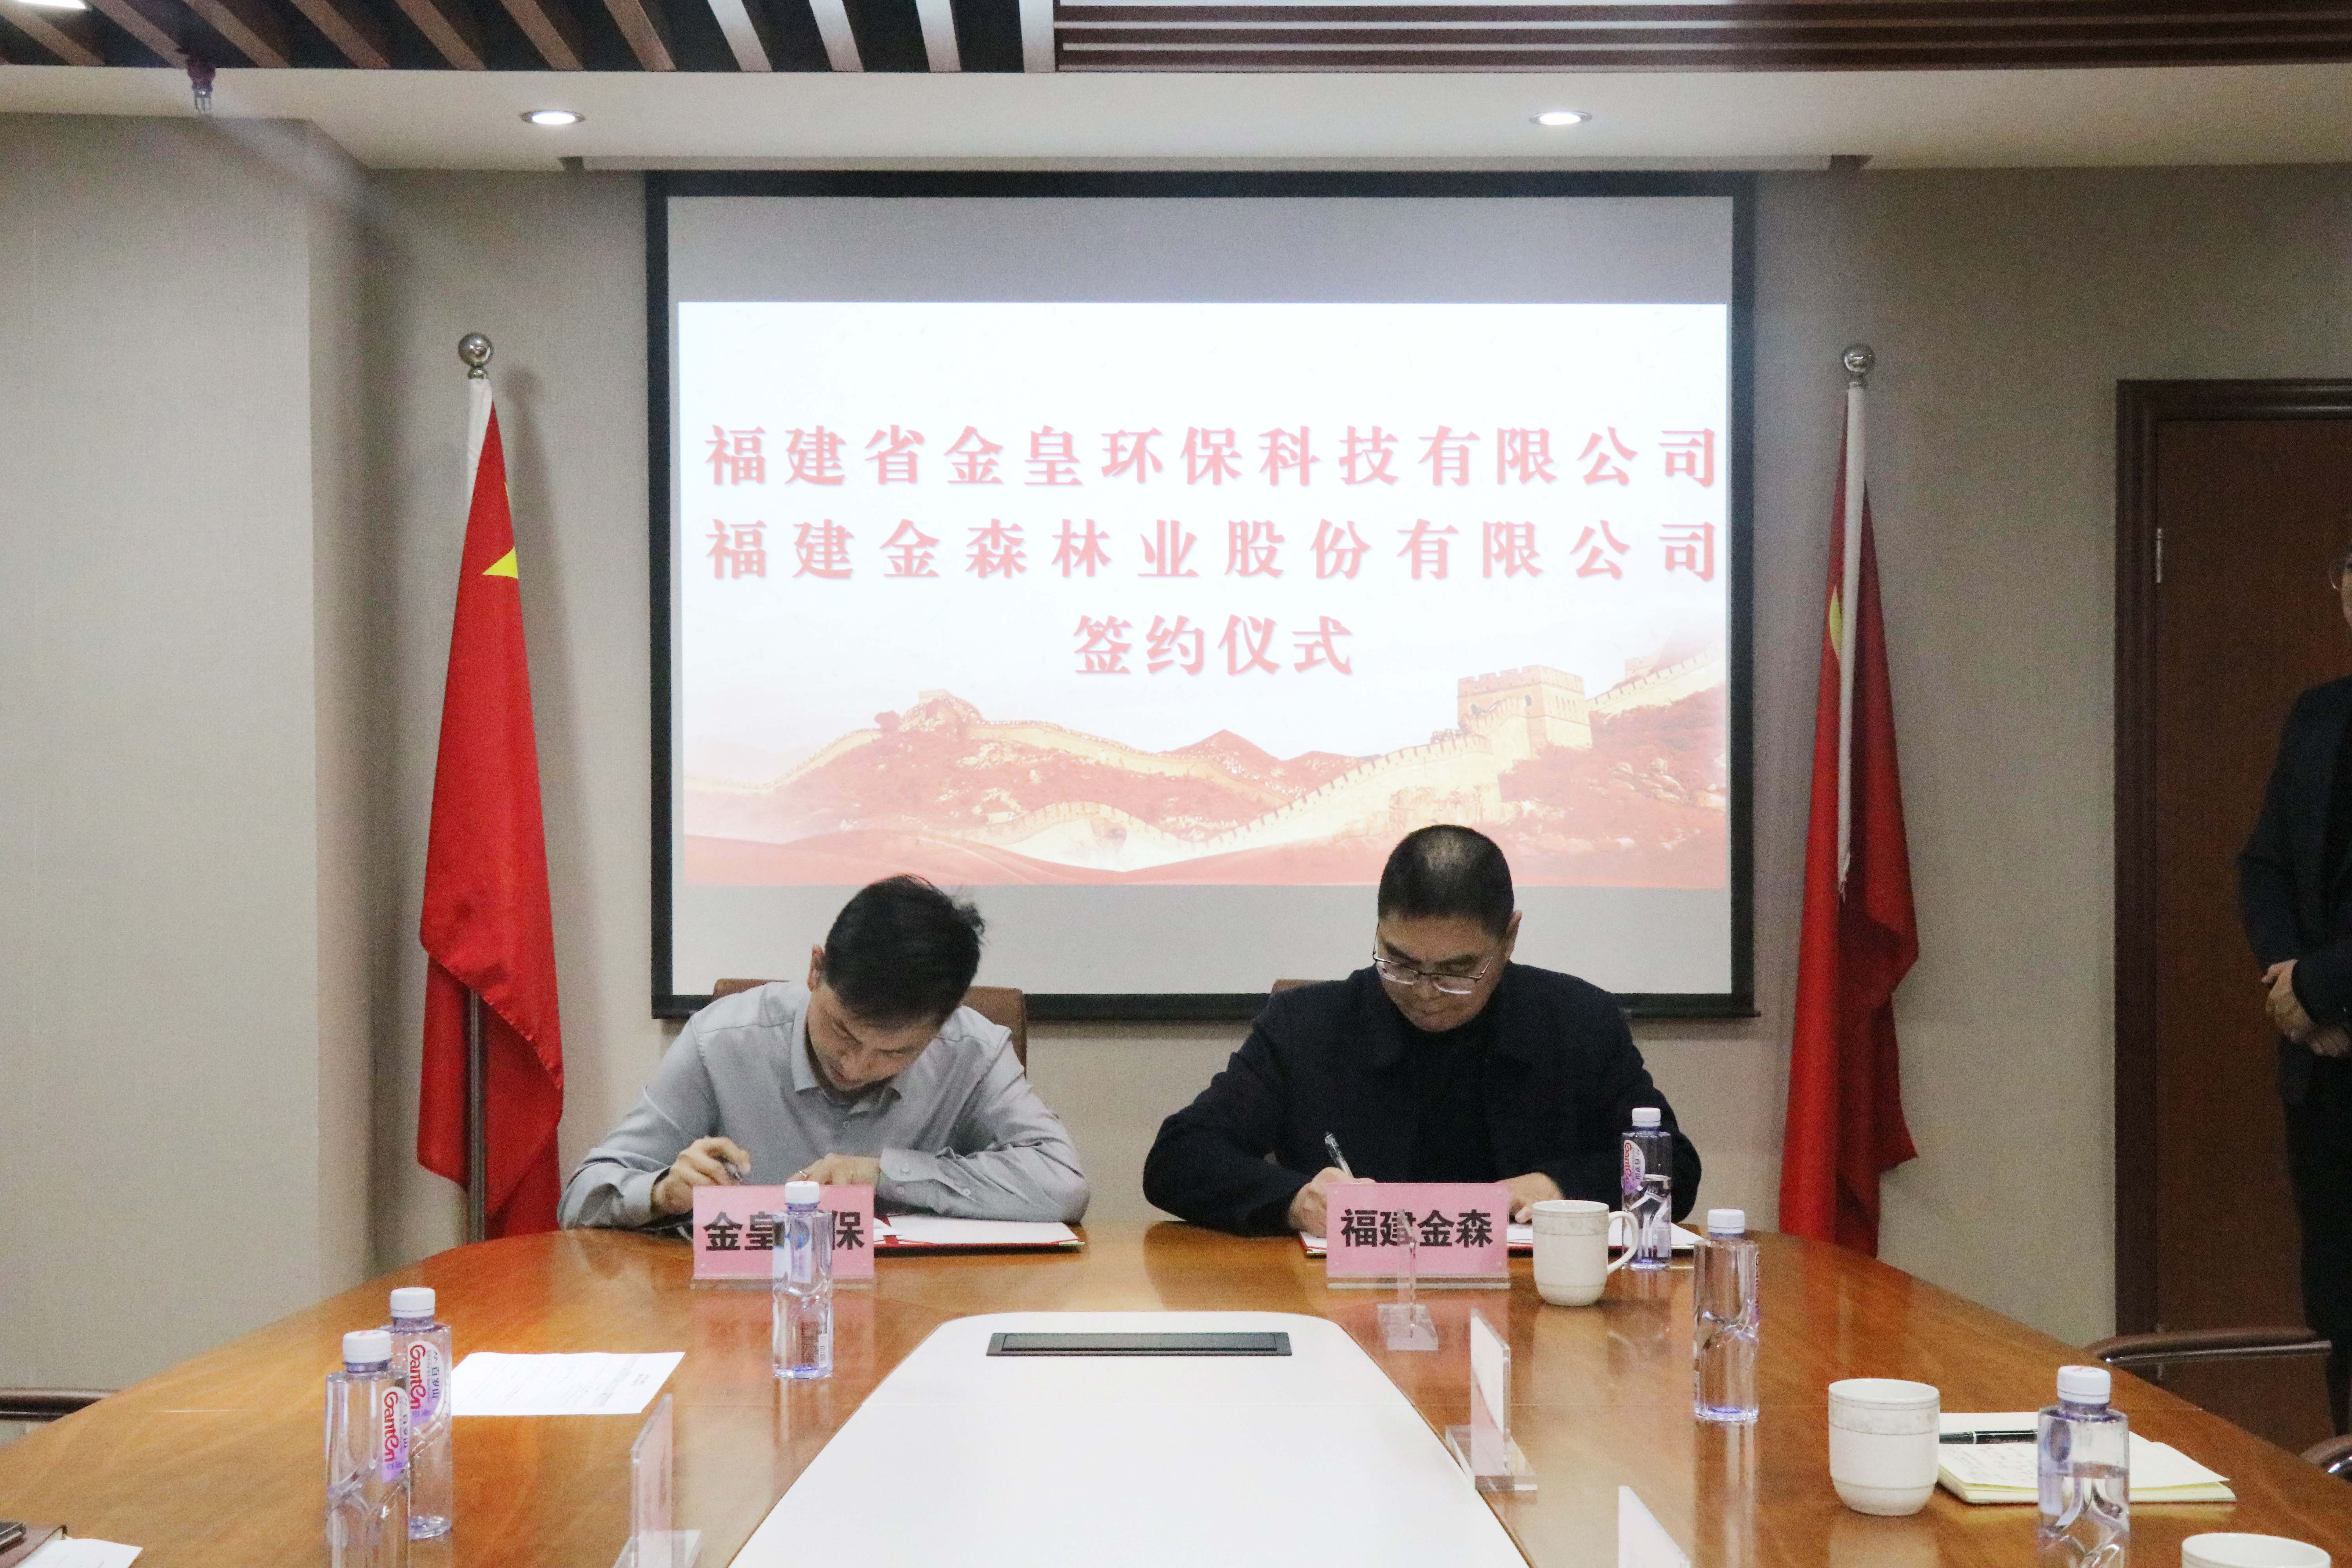 法甲线上买球(科技)有限公司与福建省金皇环保科技有限公司 签署战略合作协议